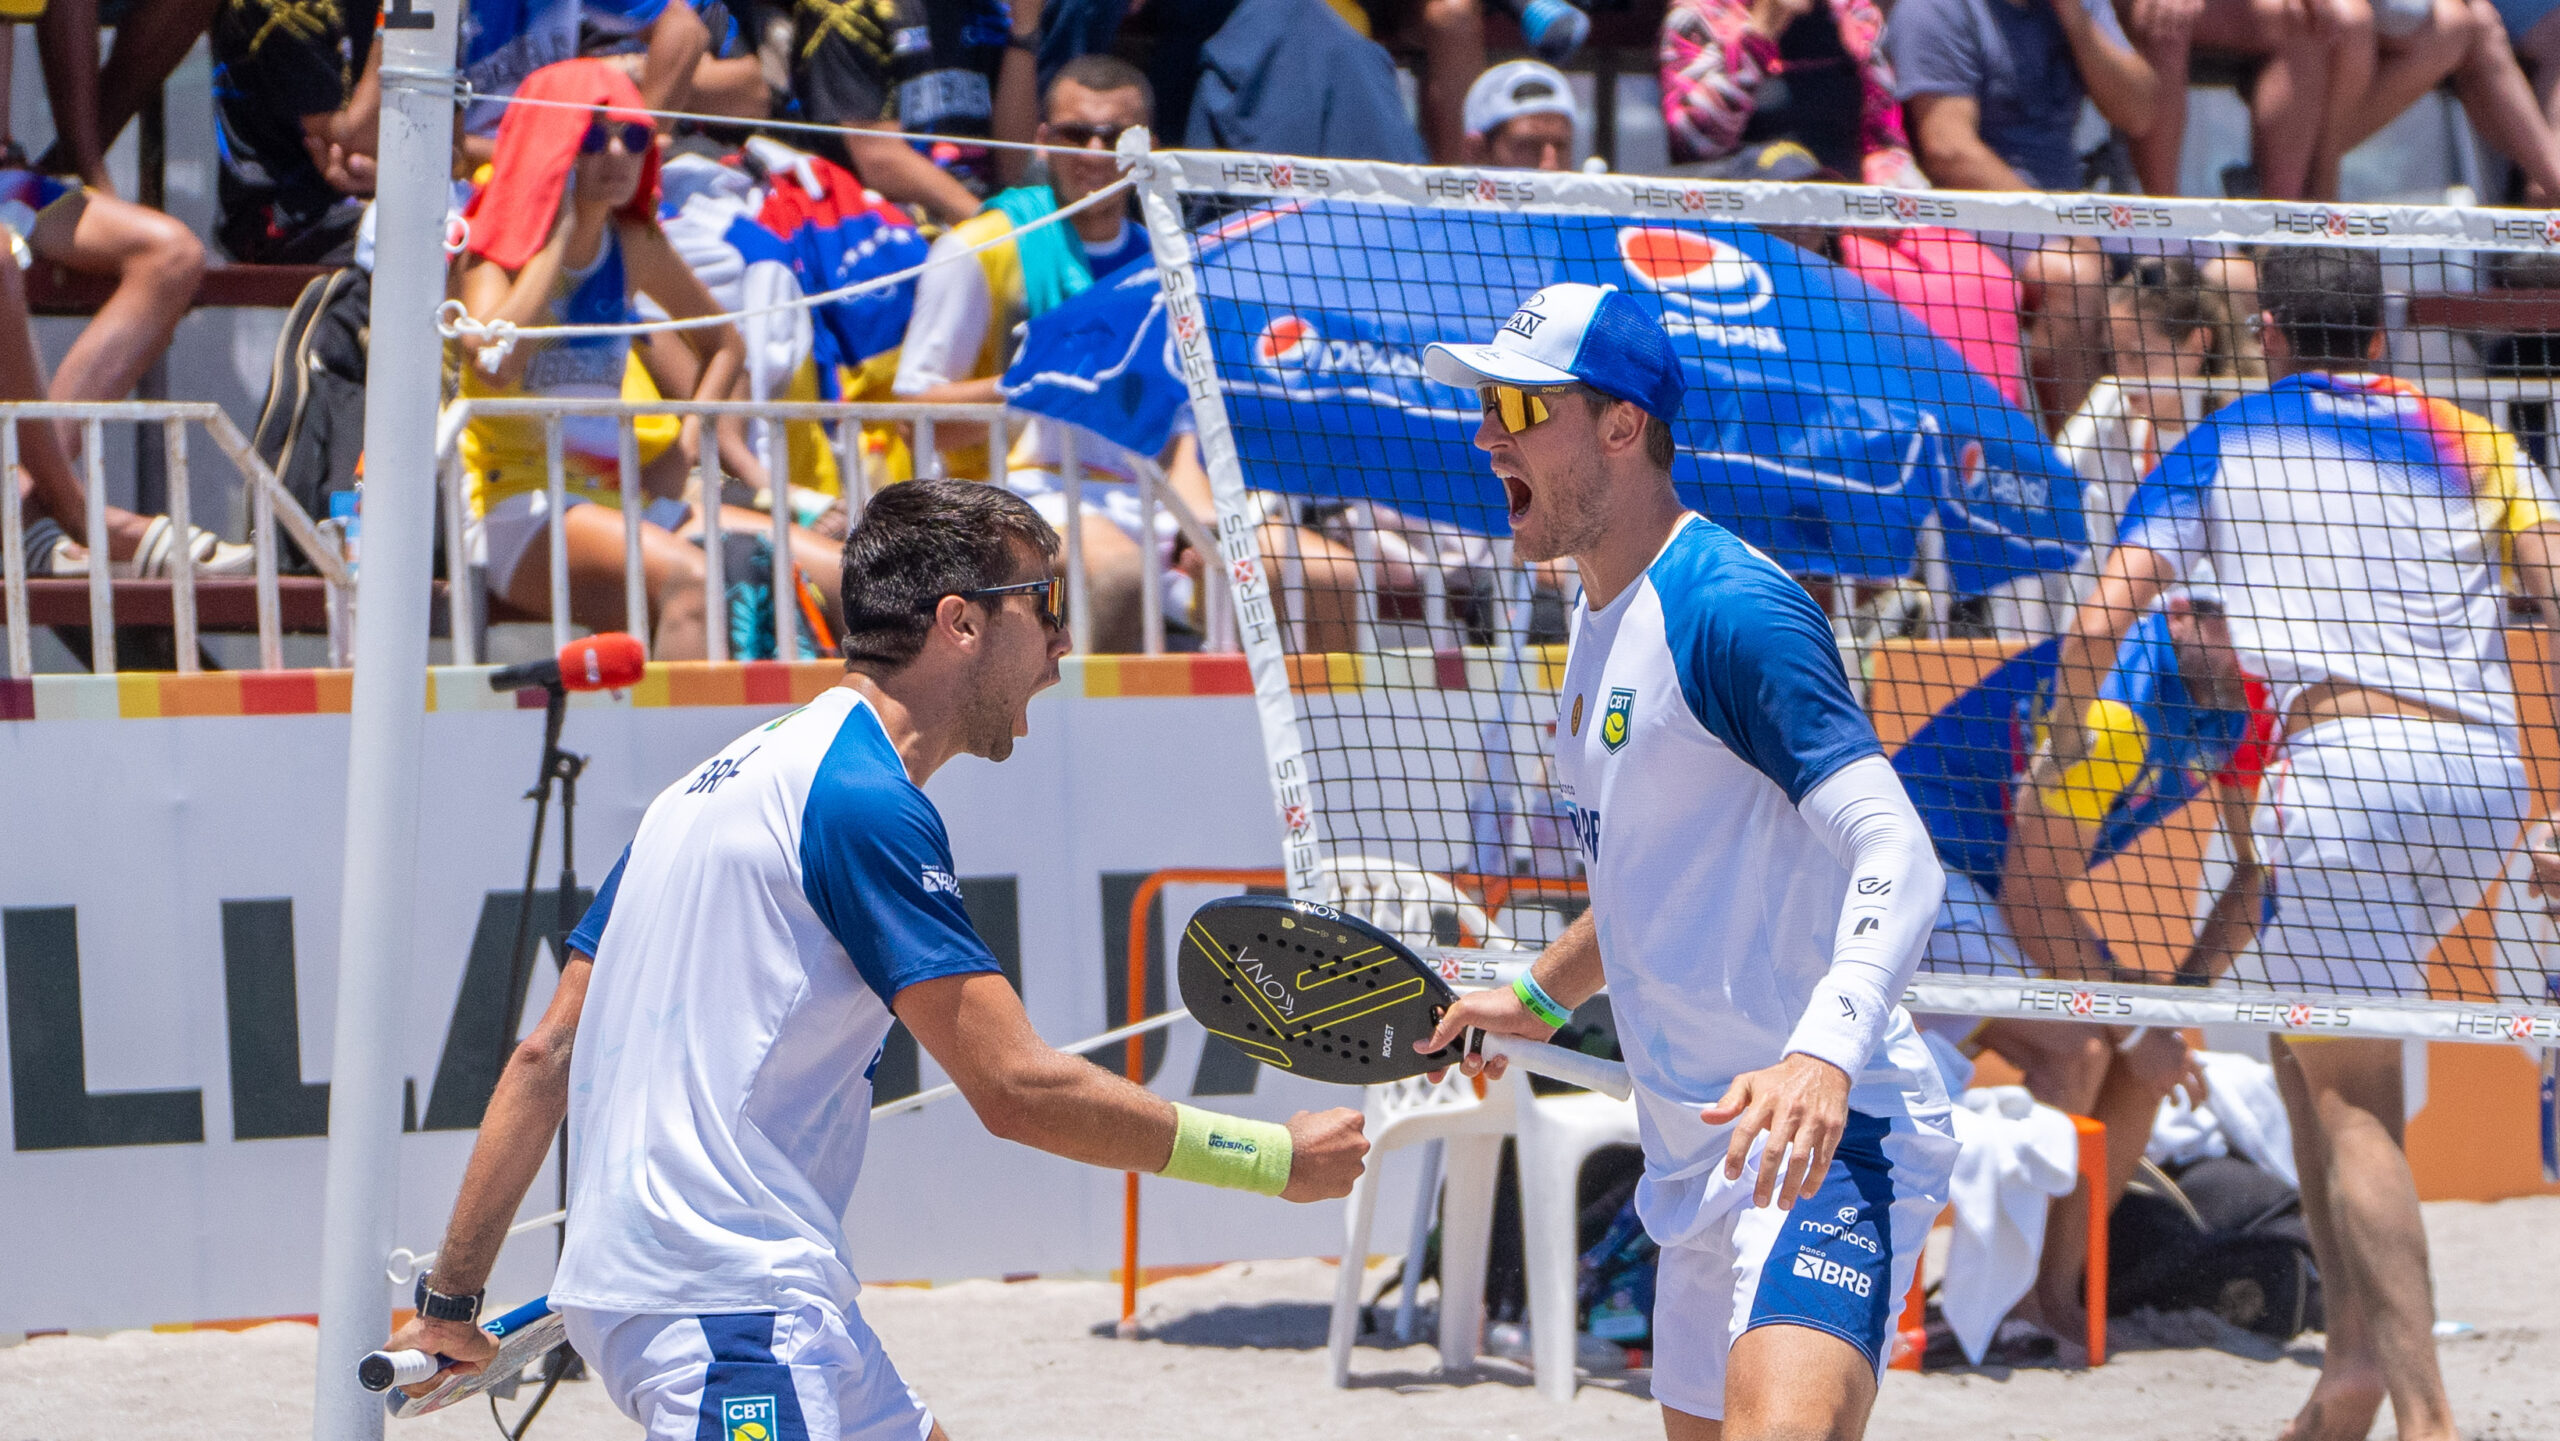  Brasil se alzó como el gran ganador del Campeonato Panamericano de Tenis Playa en el Arena Cavancha de Iquique